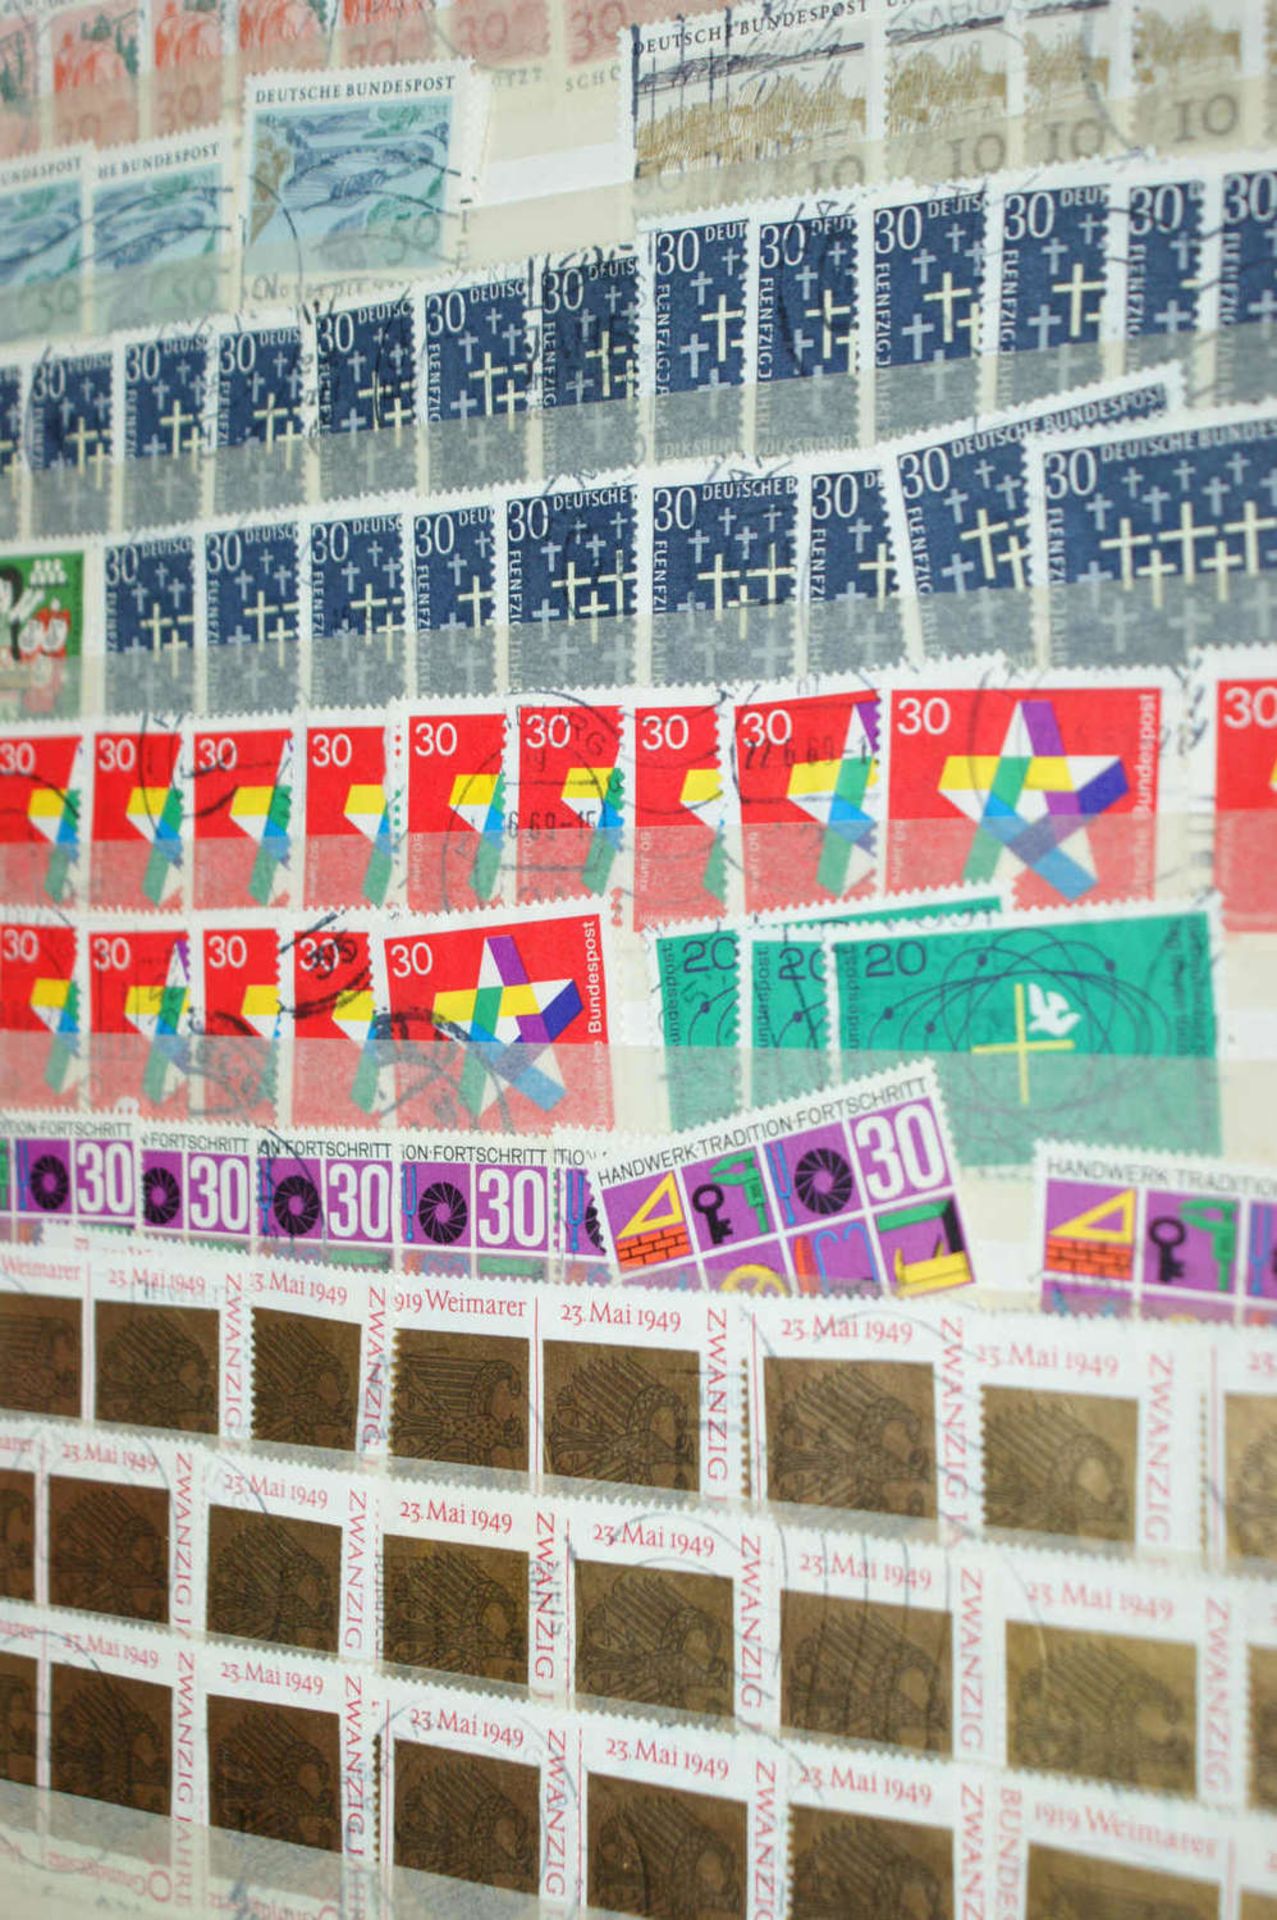 BRD - Briefmarken Dubletten Konvolut, bestehend aus 18 Alben, teilweise schlecht gelagert. - Bild 3 aus 5